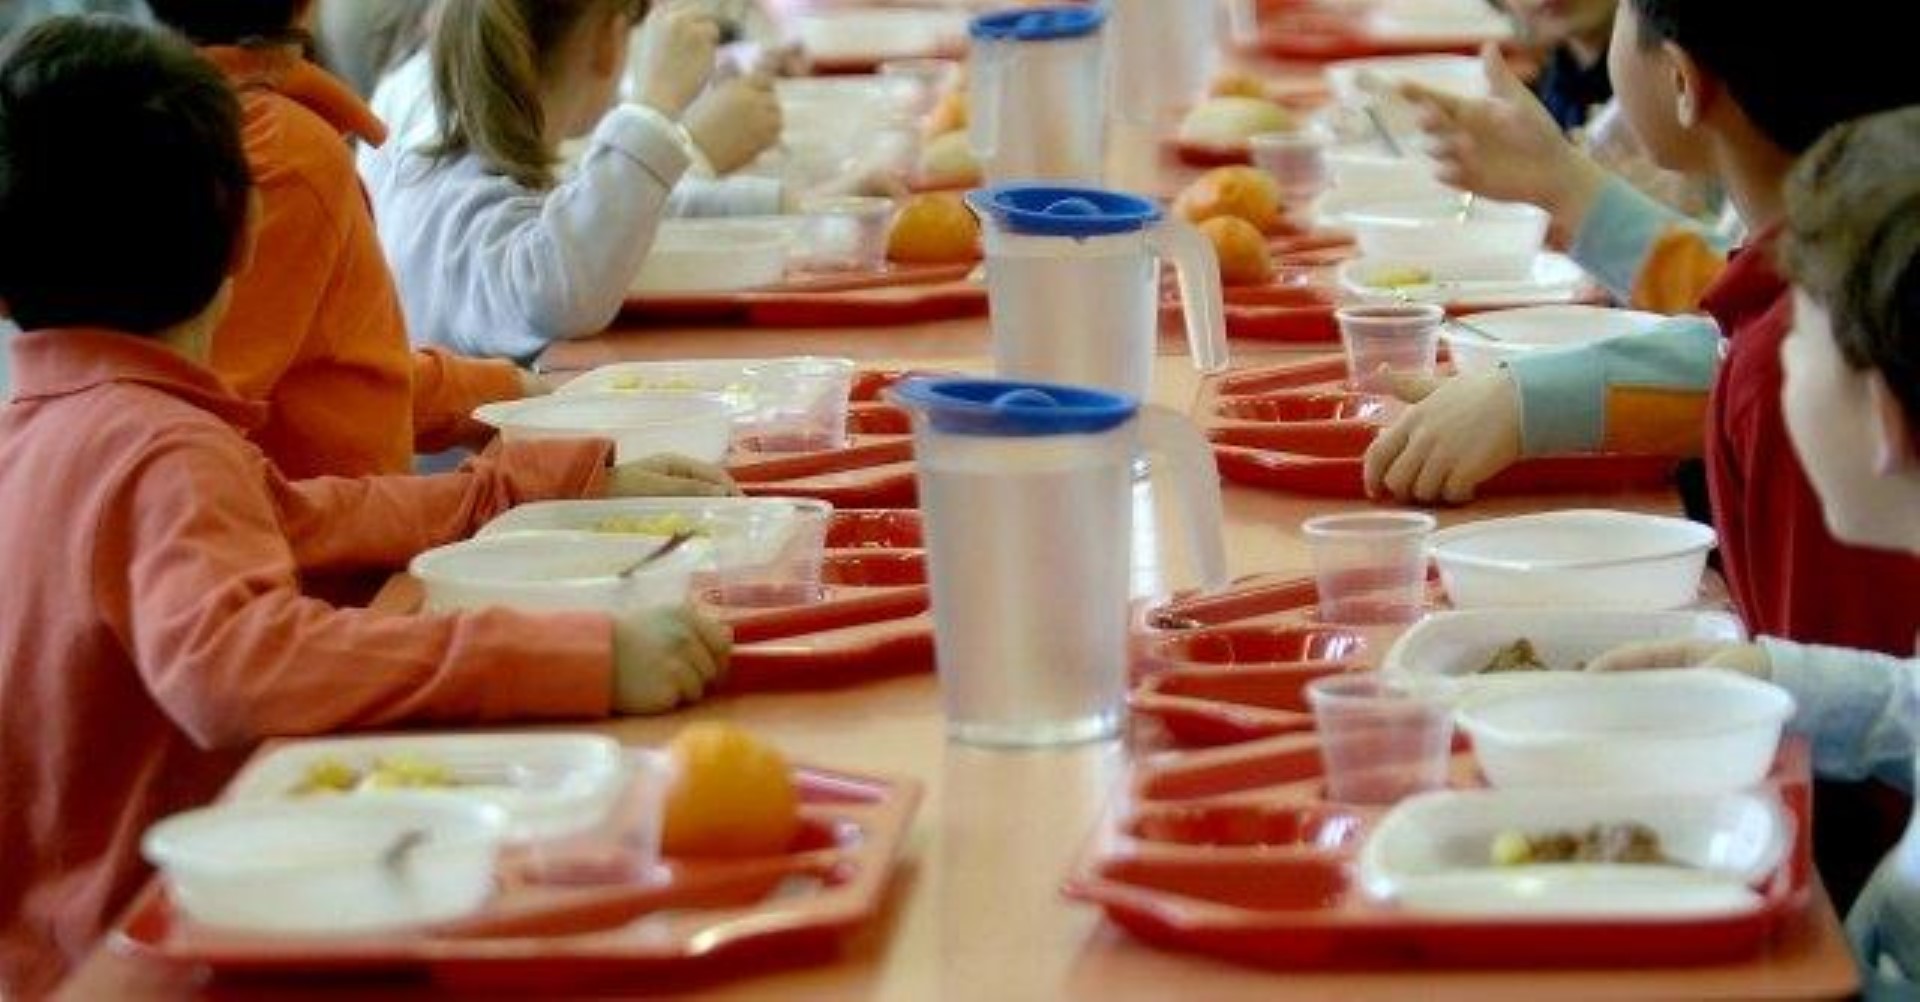 Sindicato SUL en los comedores escolares Reggio Calabria